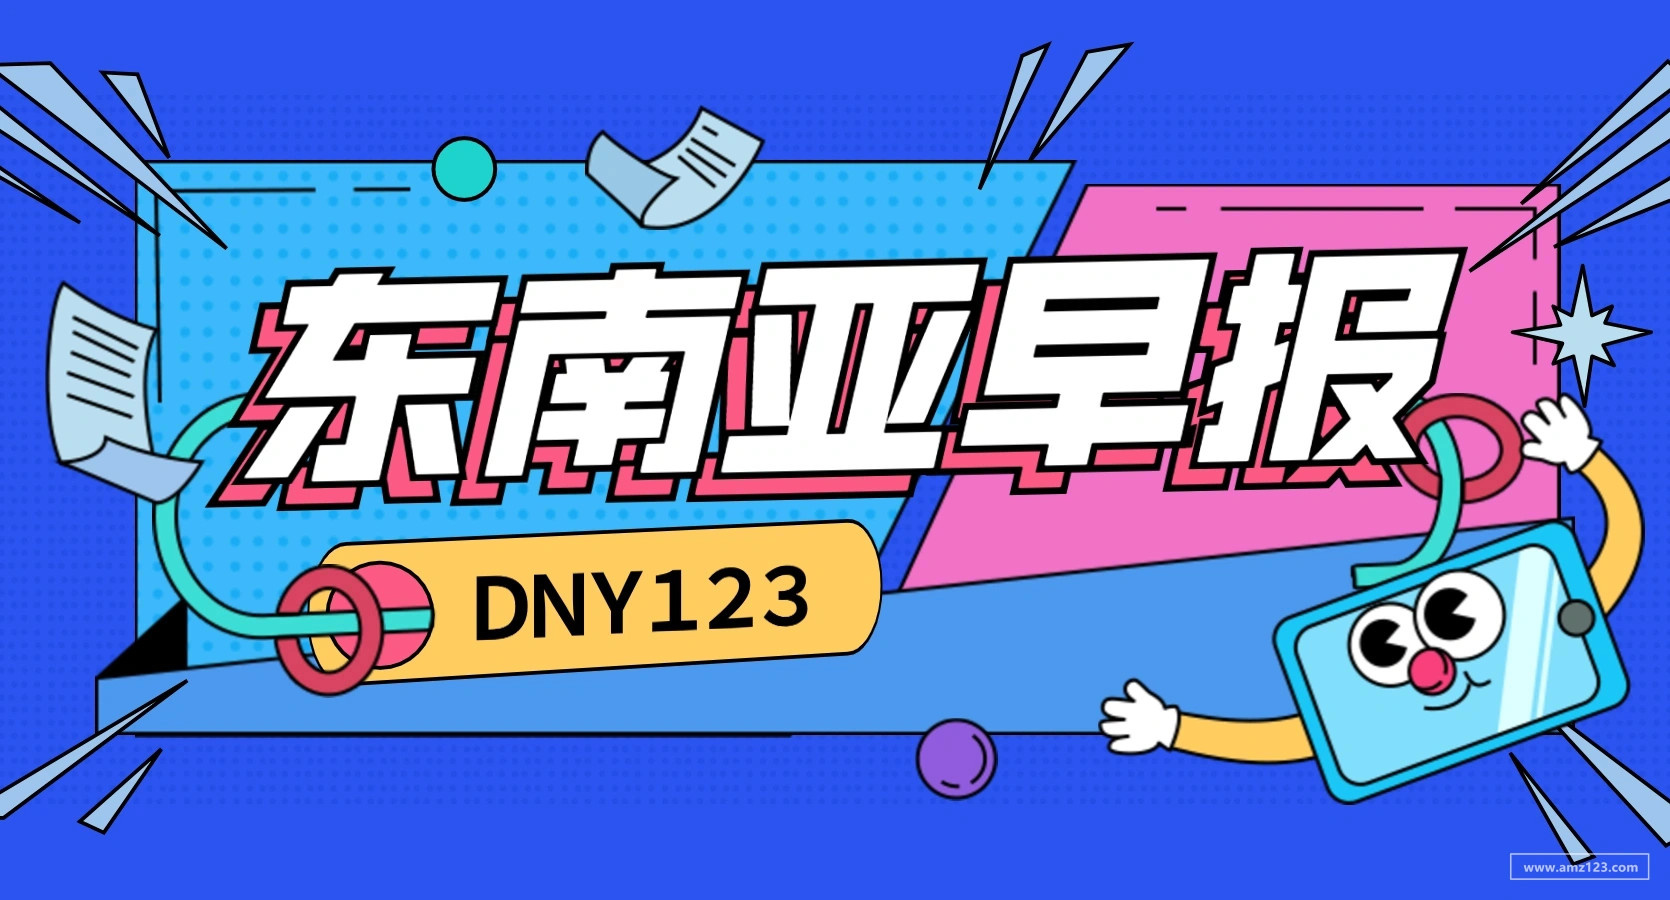 【DNY123跨境早报】80%的东南亚消费者进行跨境网购，Lazada出台磁球磁珠类商品新规范